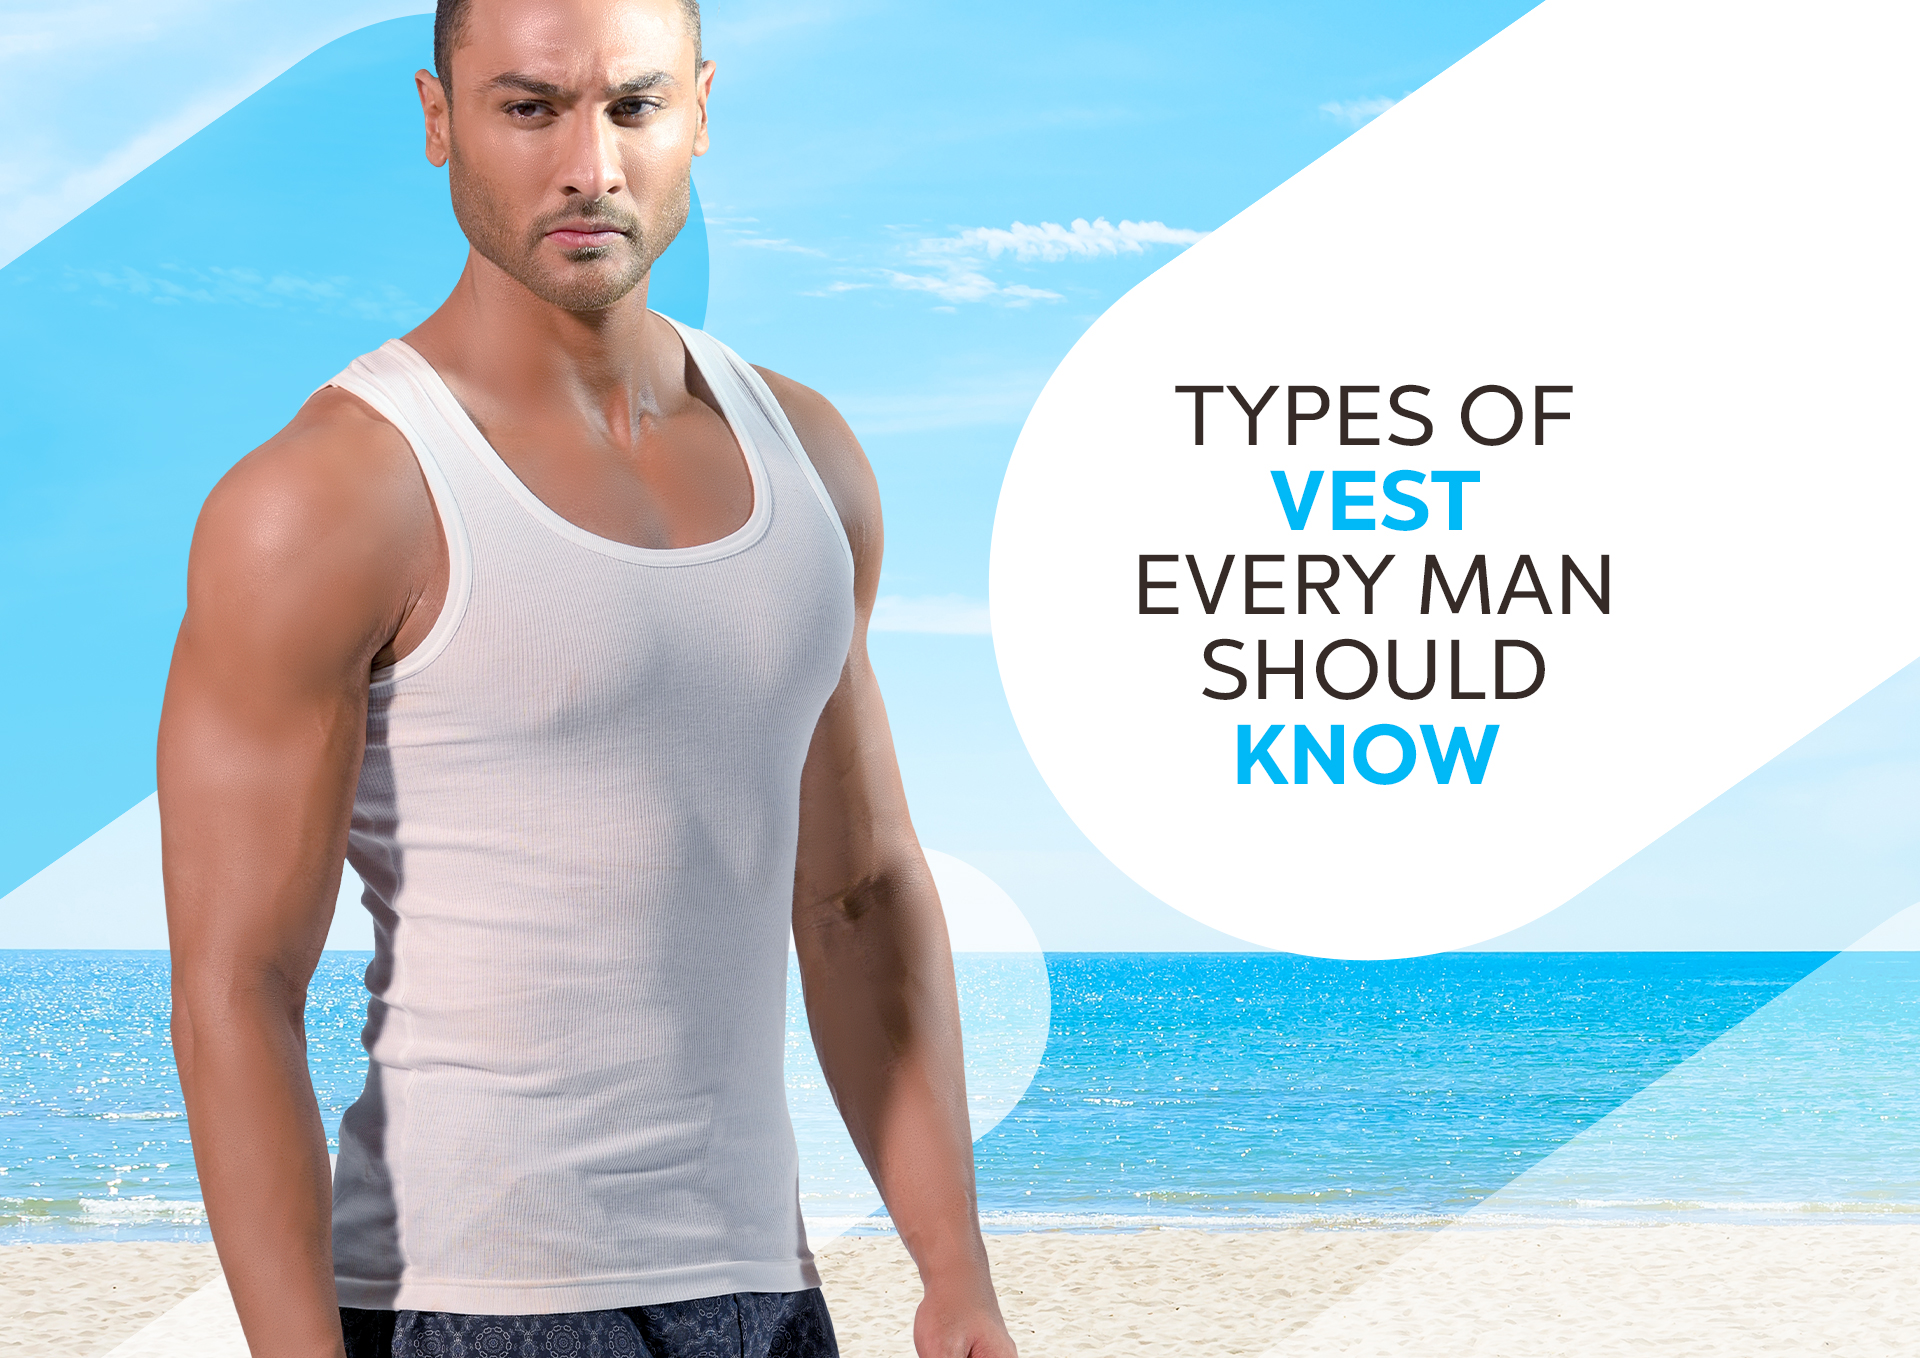 Gym Vests For Men - Buy Gym Vests For Men Online in India